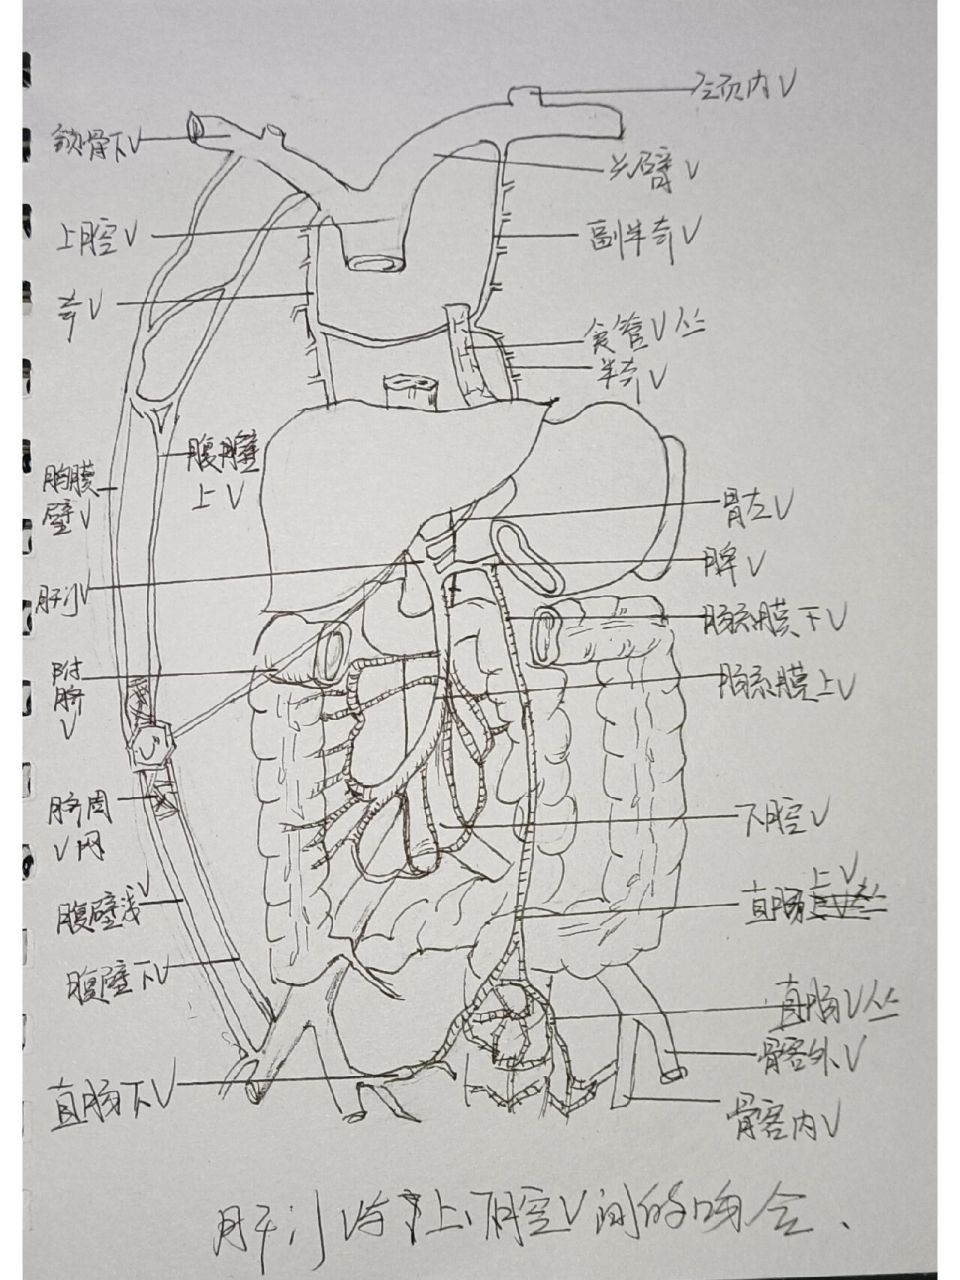 下腔静脉滤网示意图图片